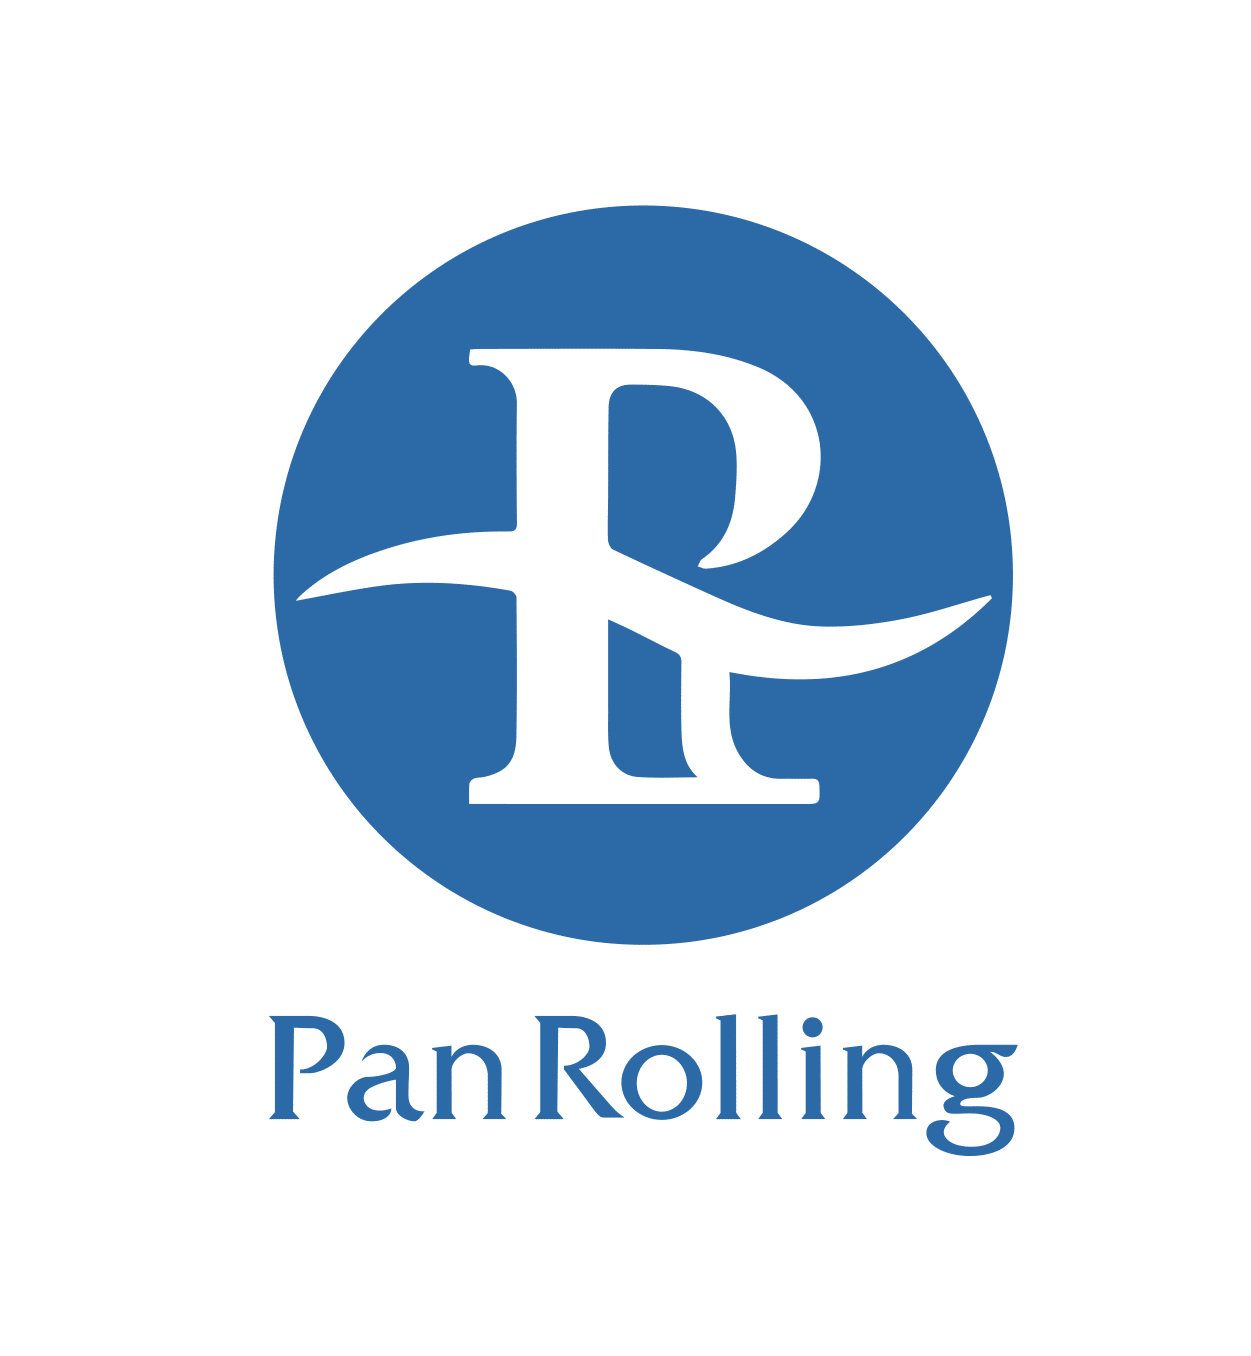 Pan Rolling